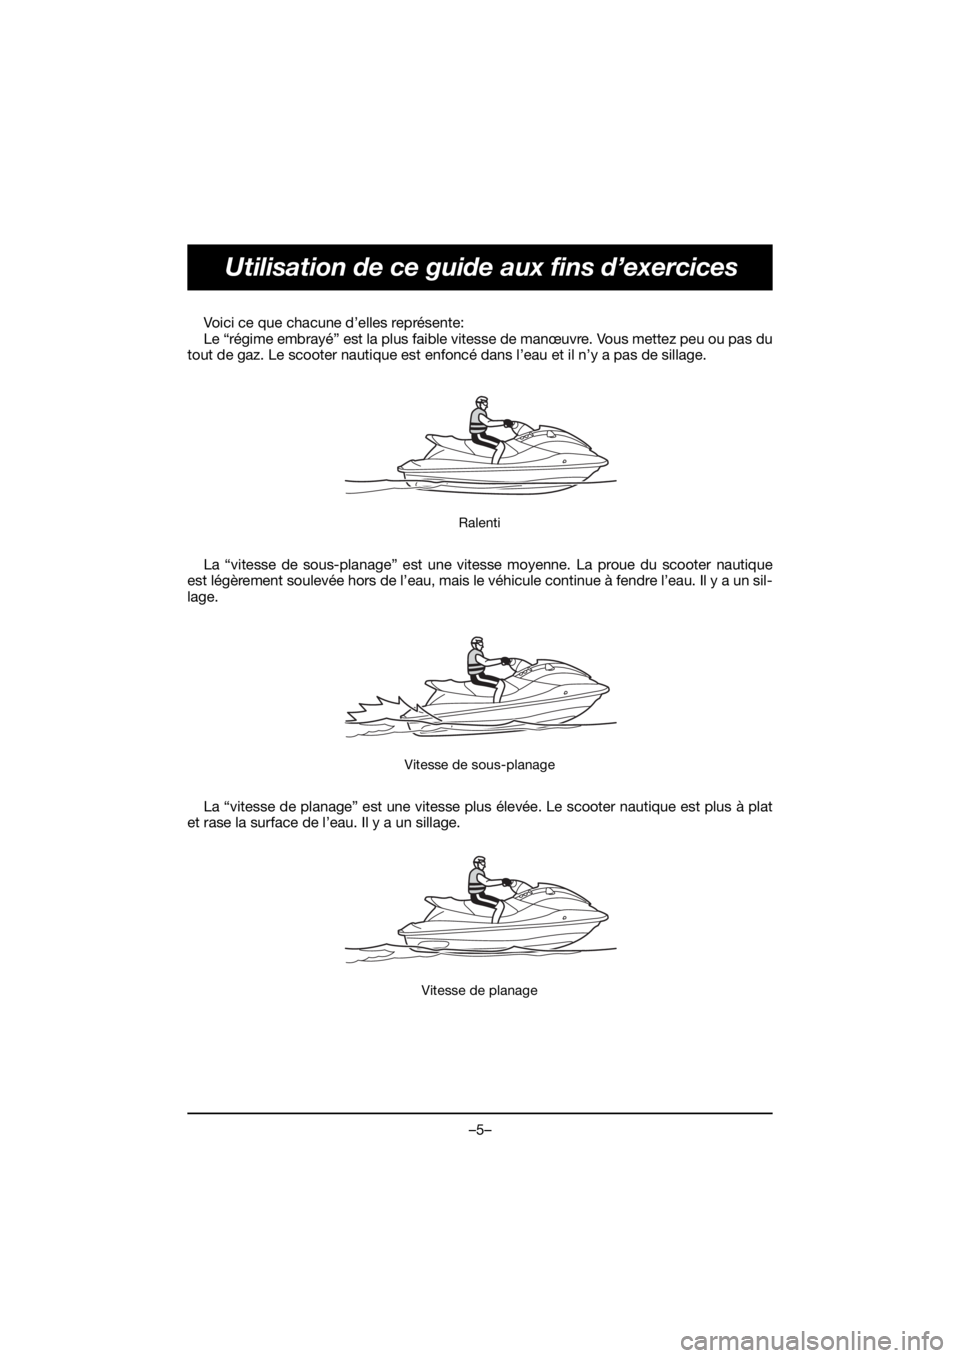 YAMAHA EX SPORT 2020  Manuale de Empleo (in Spanish) –5–
Utilisation de ce guide aux fins d’exercices
Voici ce que chacune d’elles représente: 
Le “régime embrayé” est la plus faible vitesse de manœuvre. Vous mettez peu ou pas du
tout de